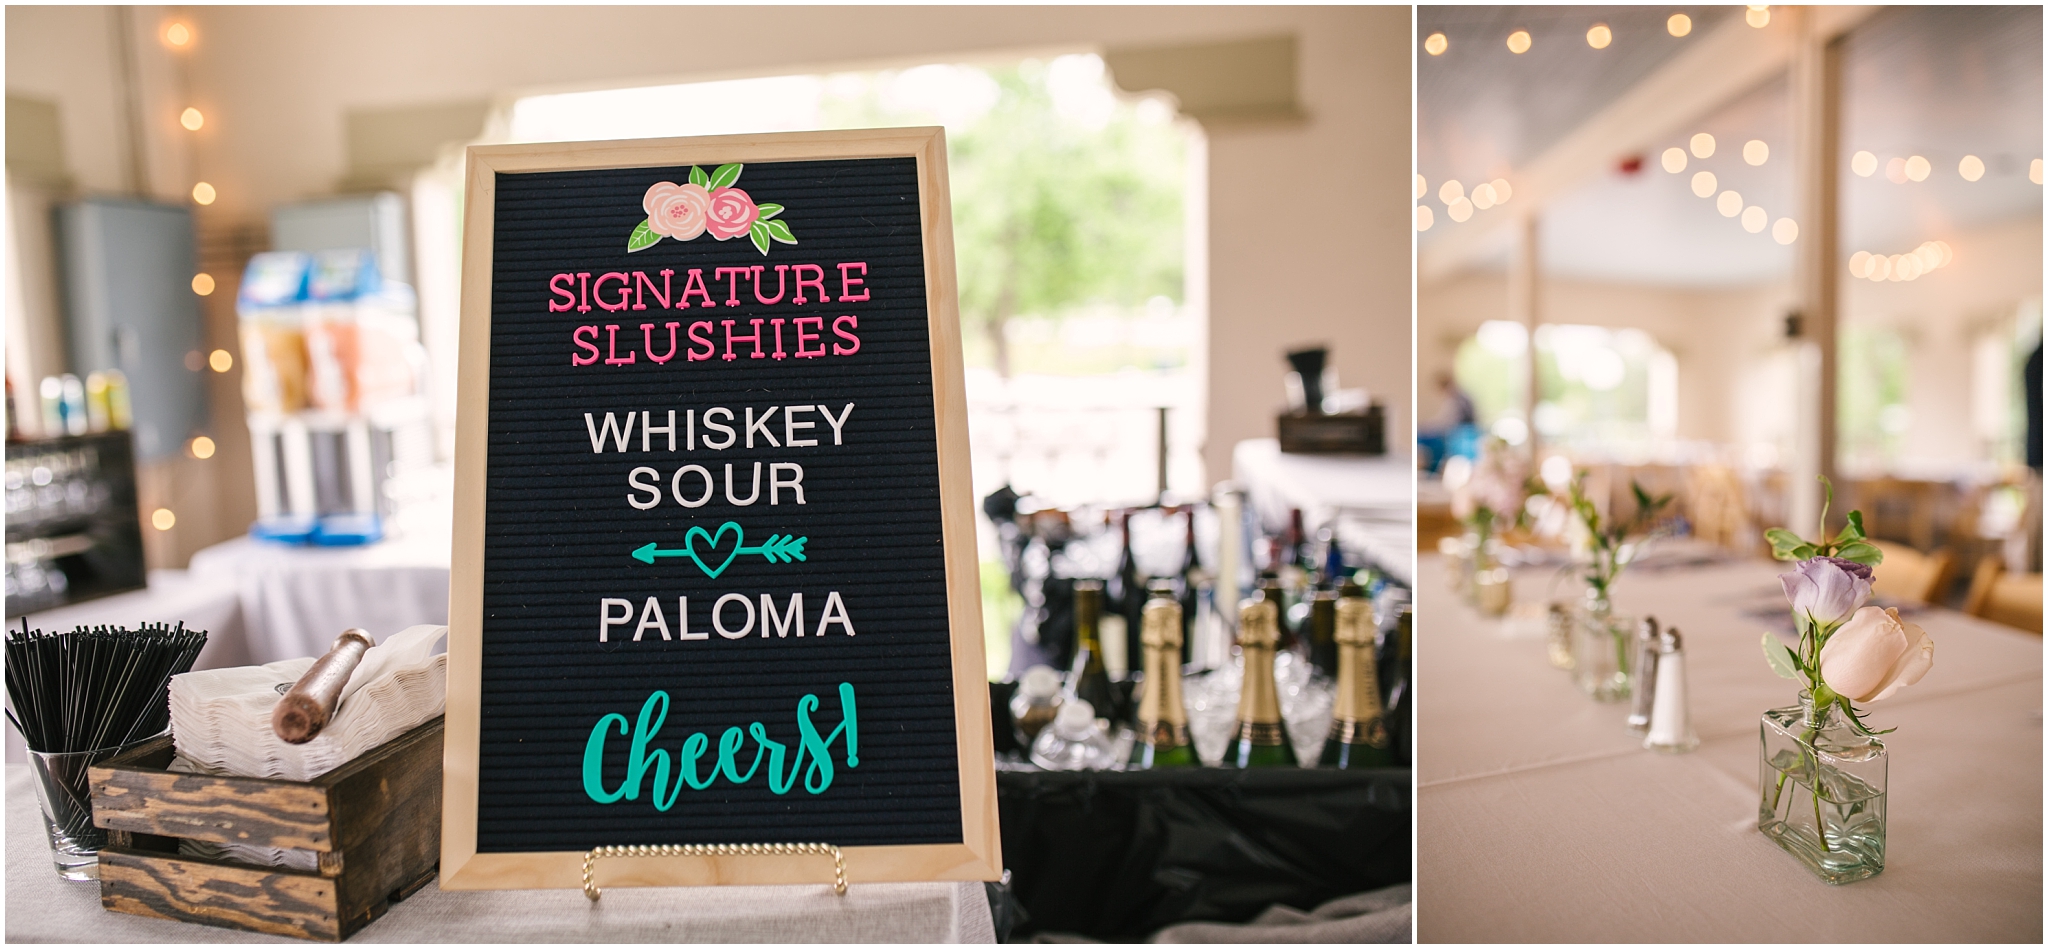 Signature slushie drinks for summer Washington Park Boathouse wedding in Denver Colorado